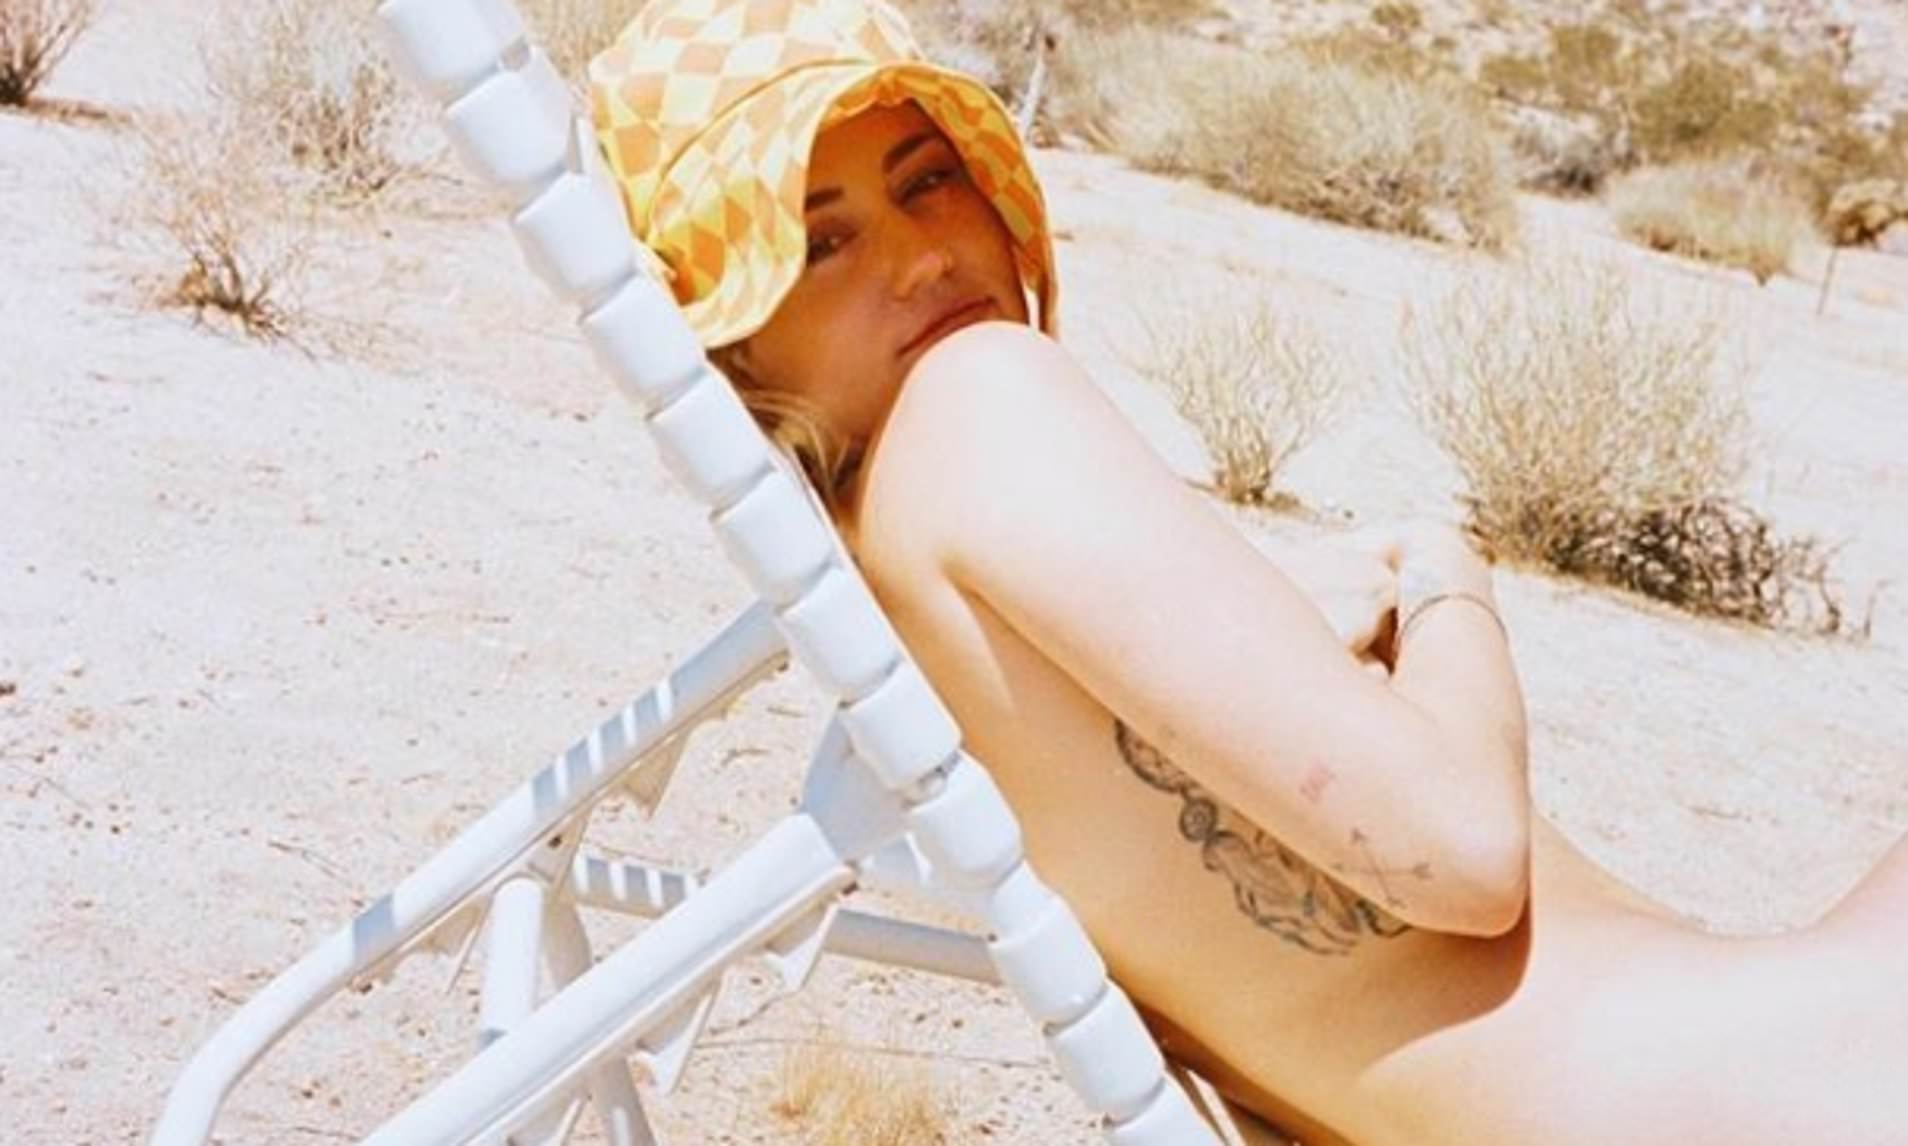 Miley cryus naked back